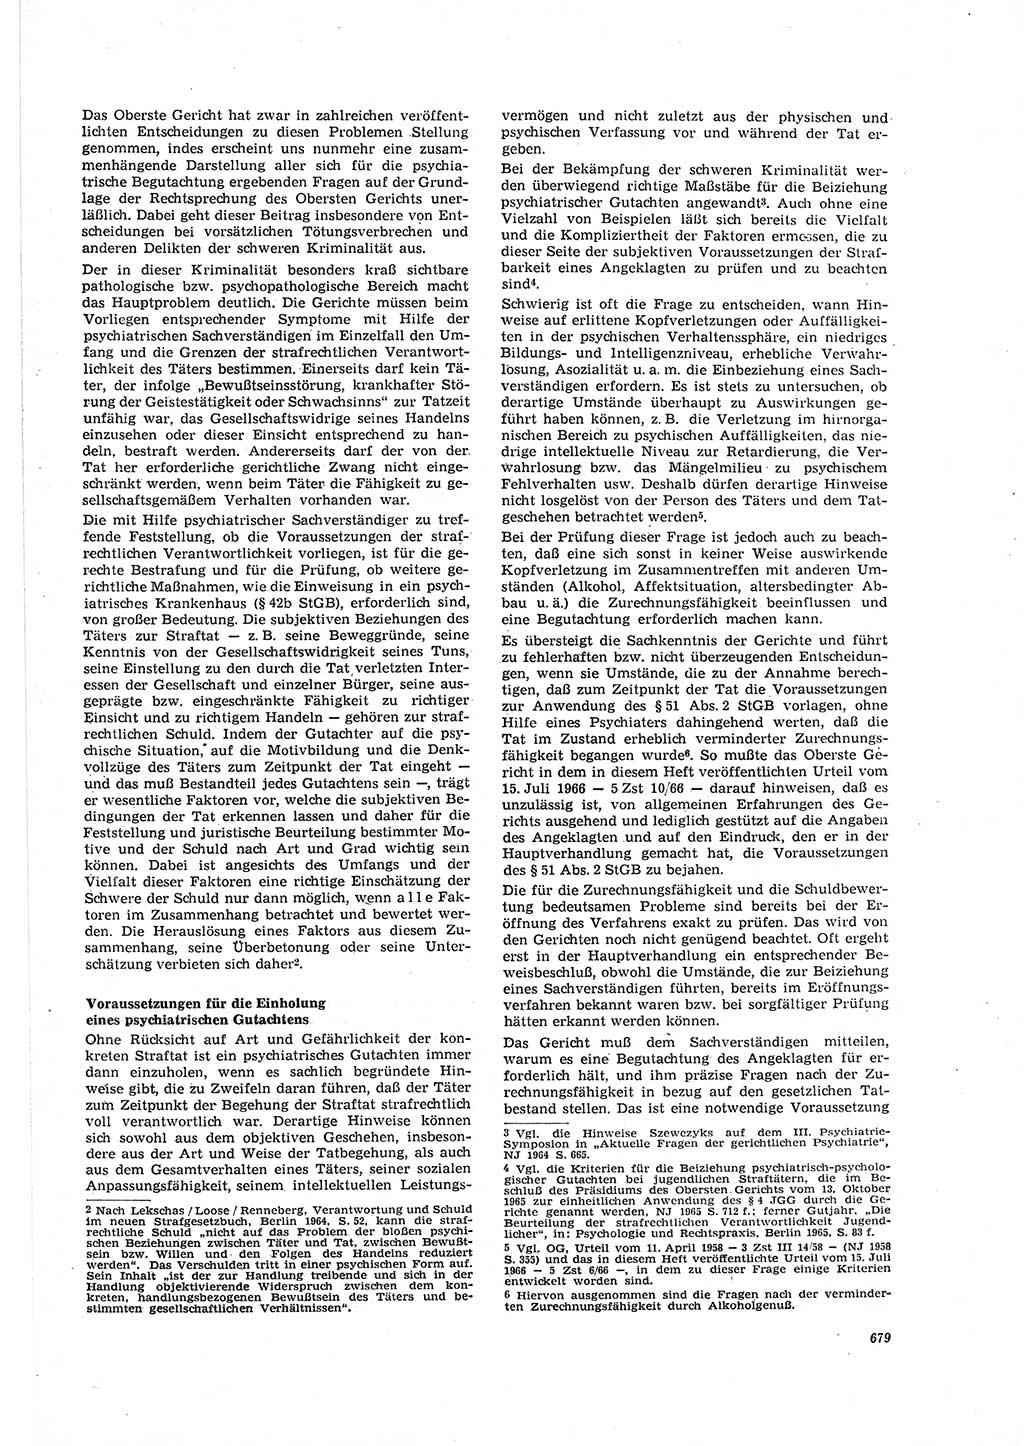 Neue Justiz (NJ), Zeitschrift für Recht und Rechtswissenschaft [Deutsche Demokratische Republik (DDR)], 20. Jahrgang 1966, Seite 679 (NJ DDR 1966, S. 679)